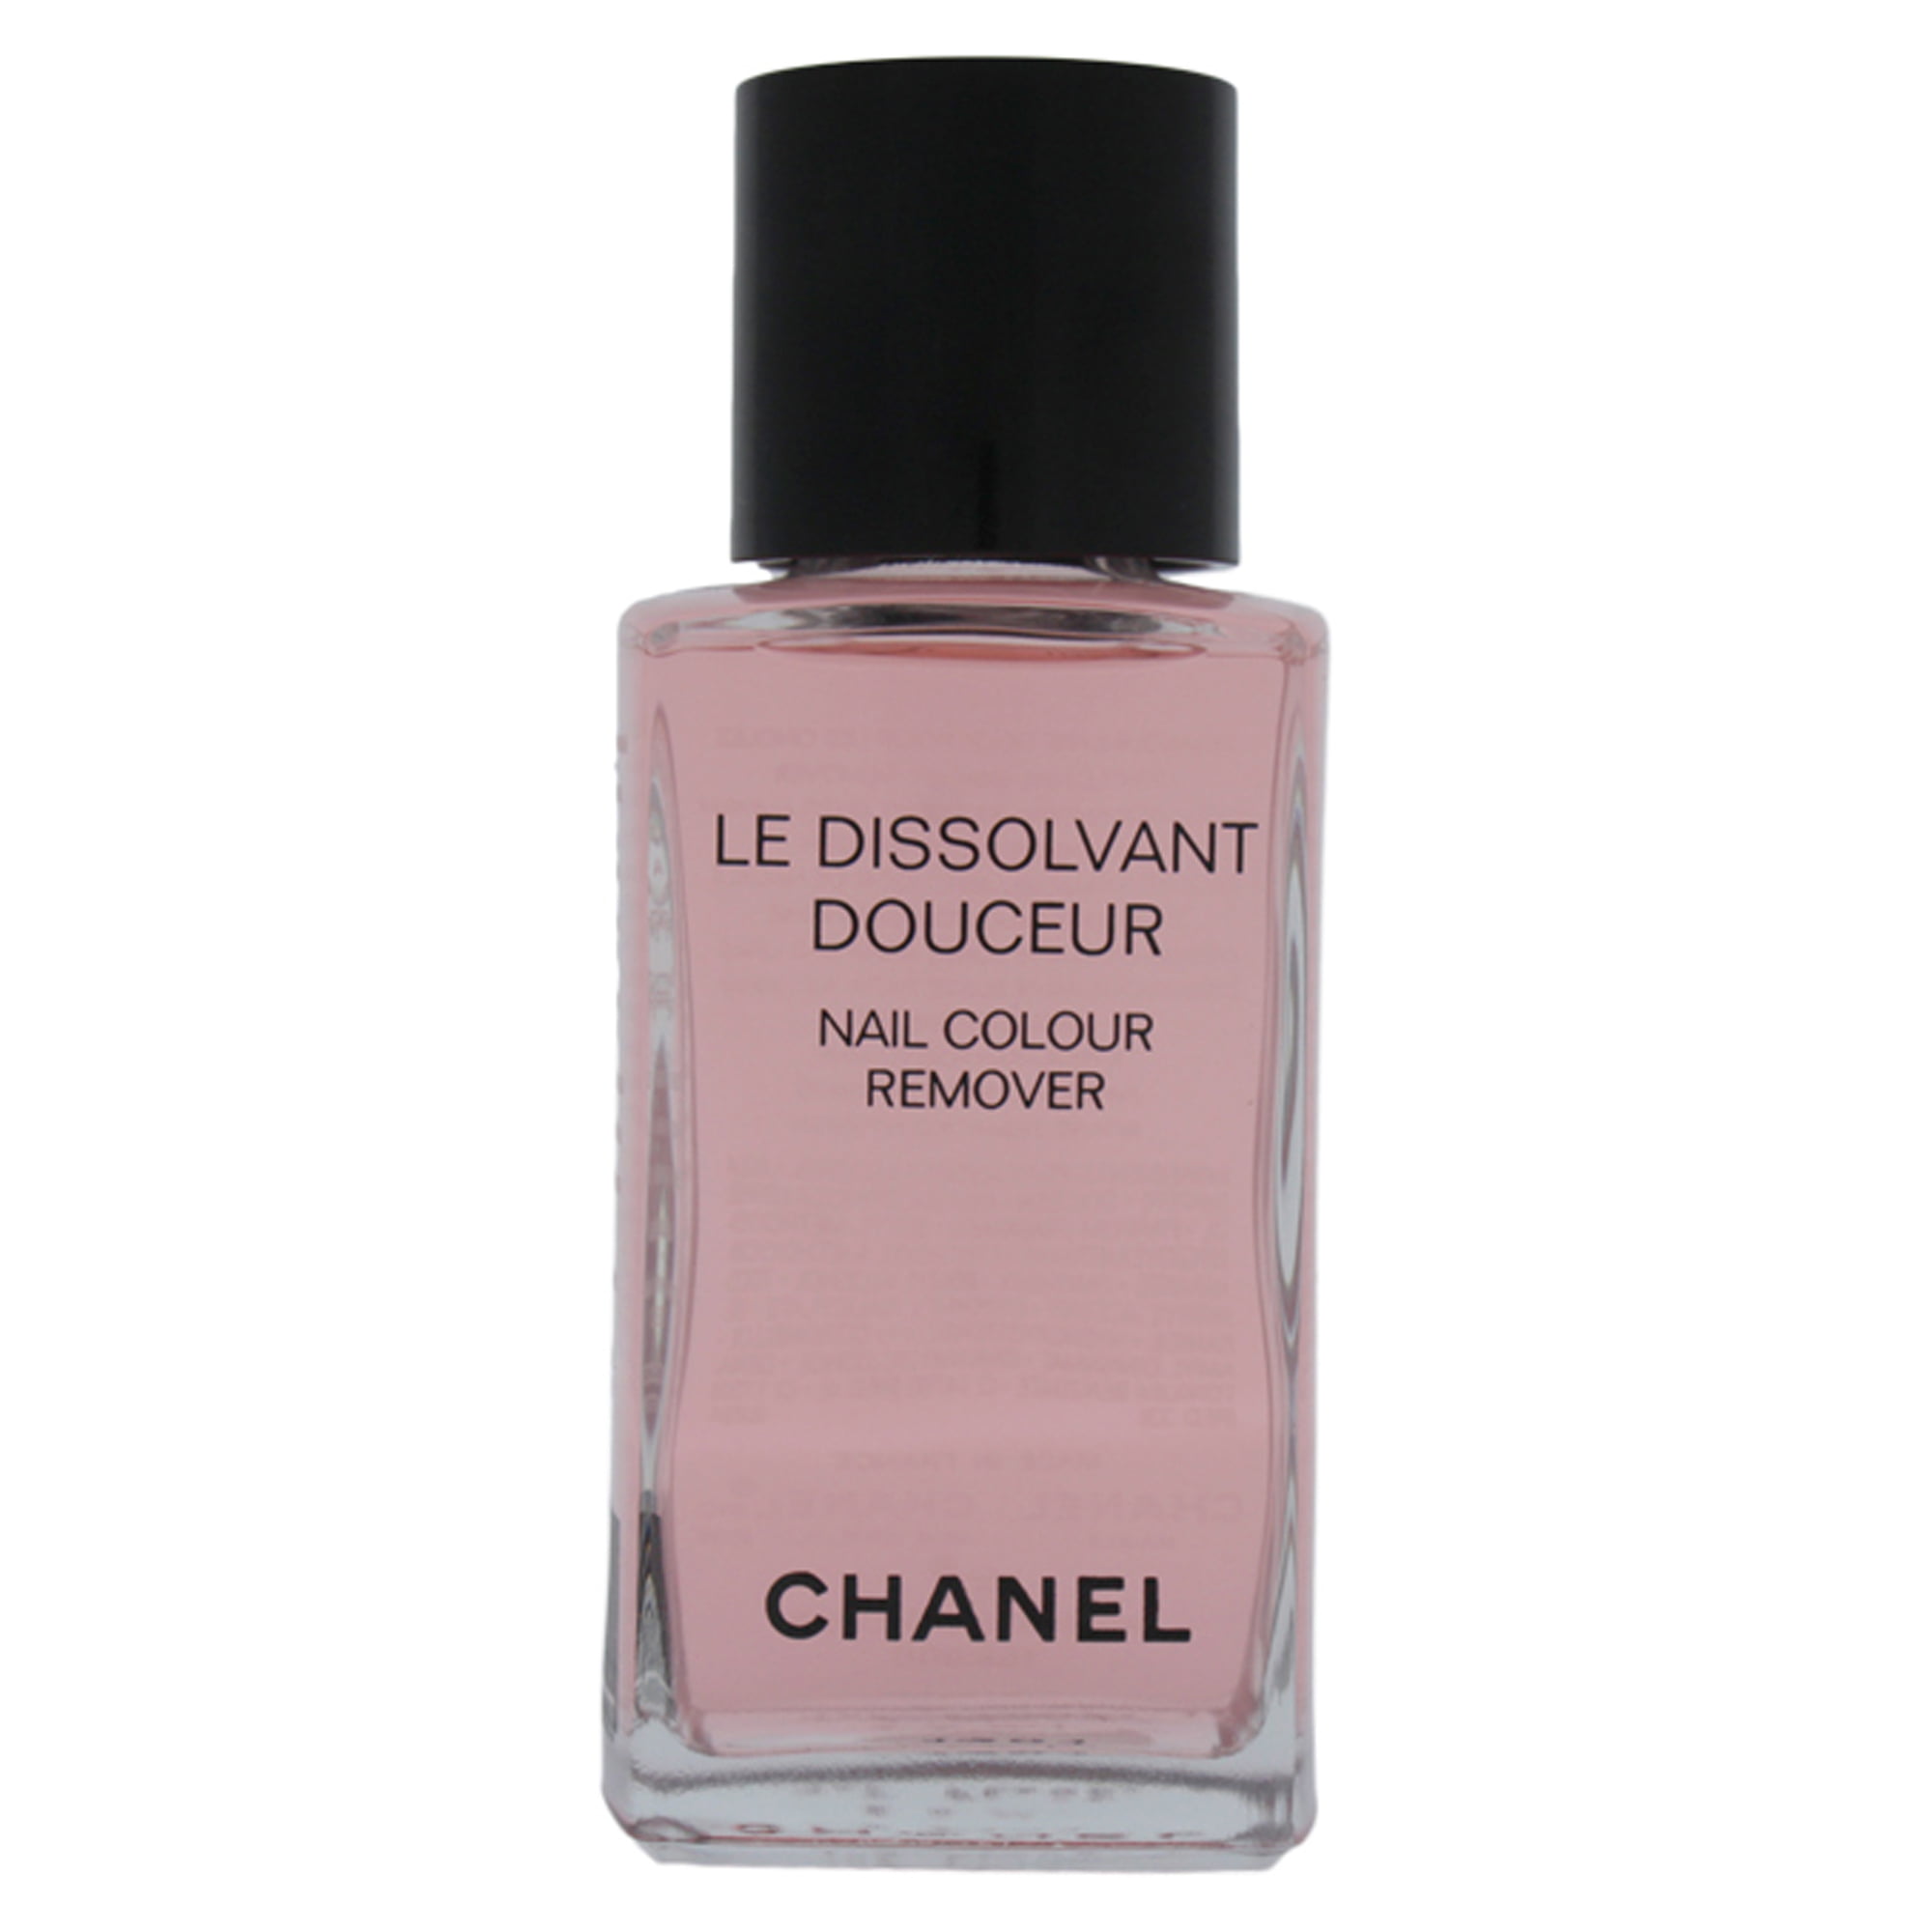 Le Dissolvant Douceur by Chanel for - 1.7 oz Nail Colour Remover - Walmart.com